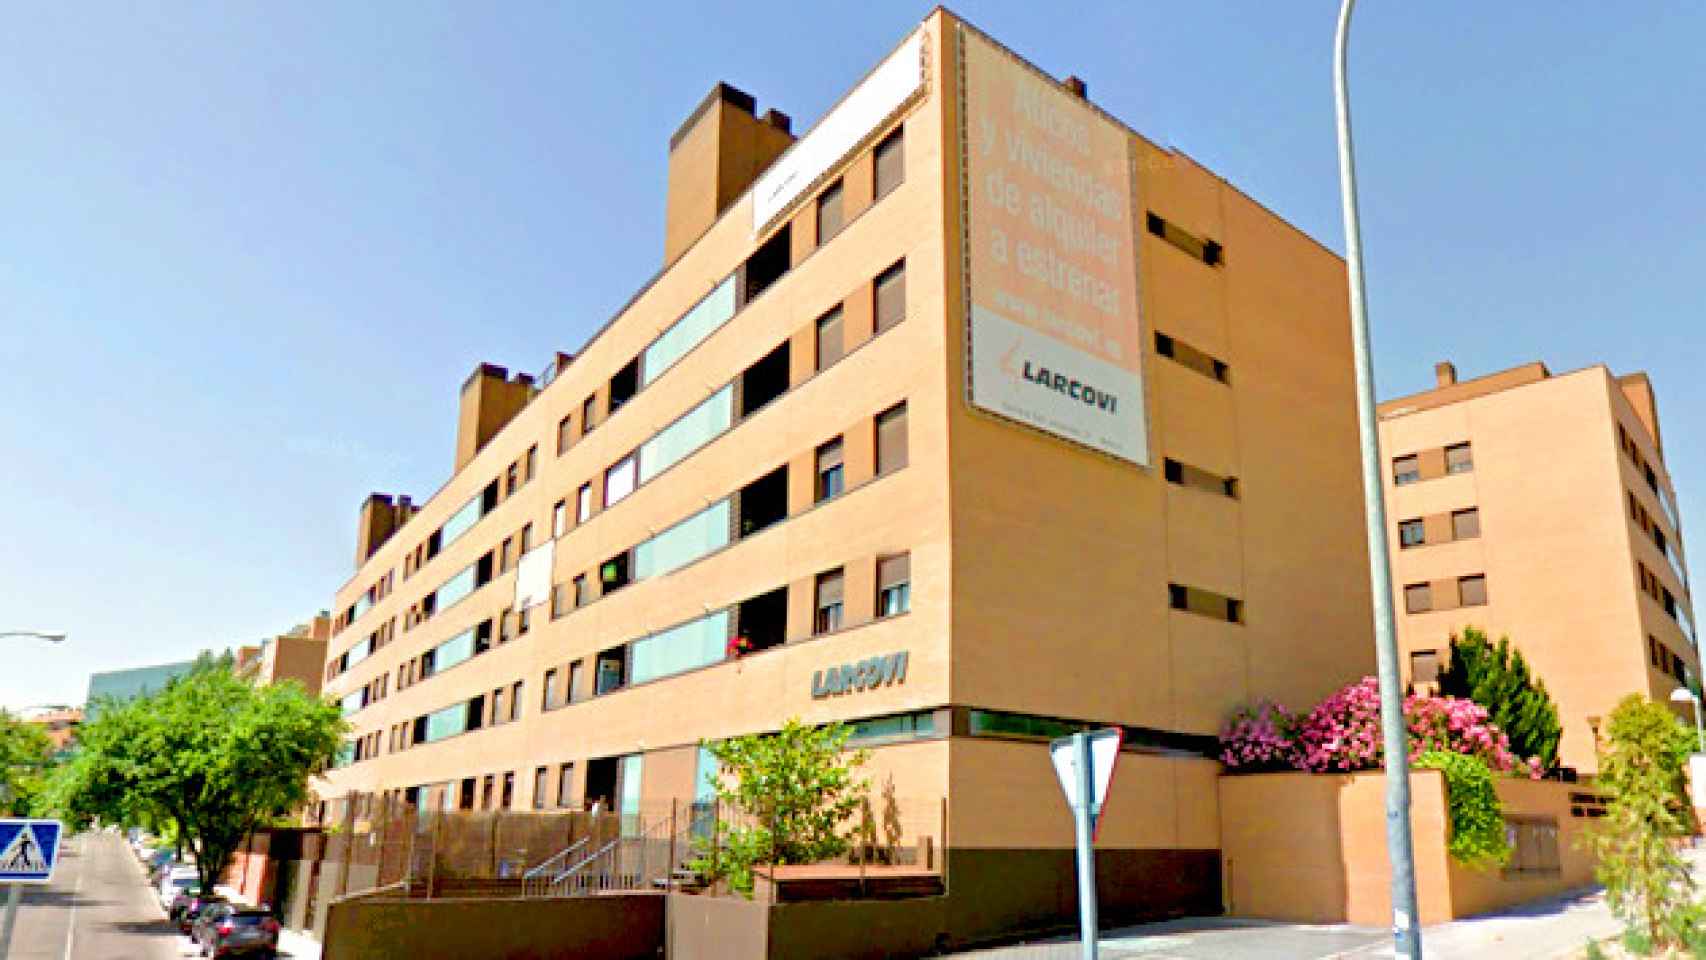 Sede de Larcovi en Madrid en la Avenida del Talgo / CG